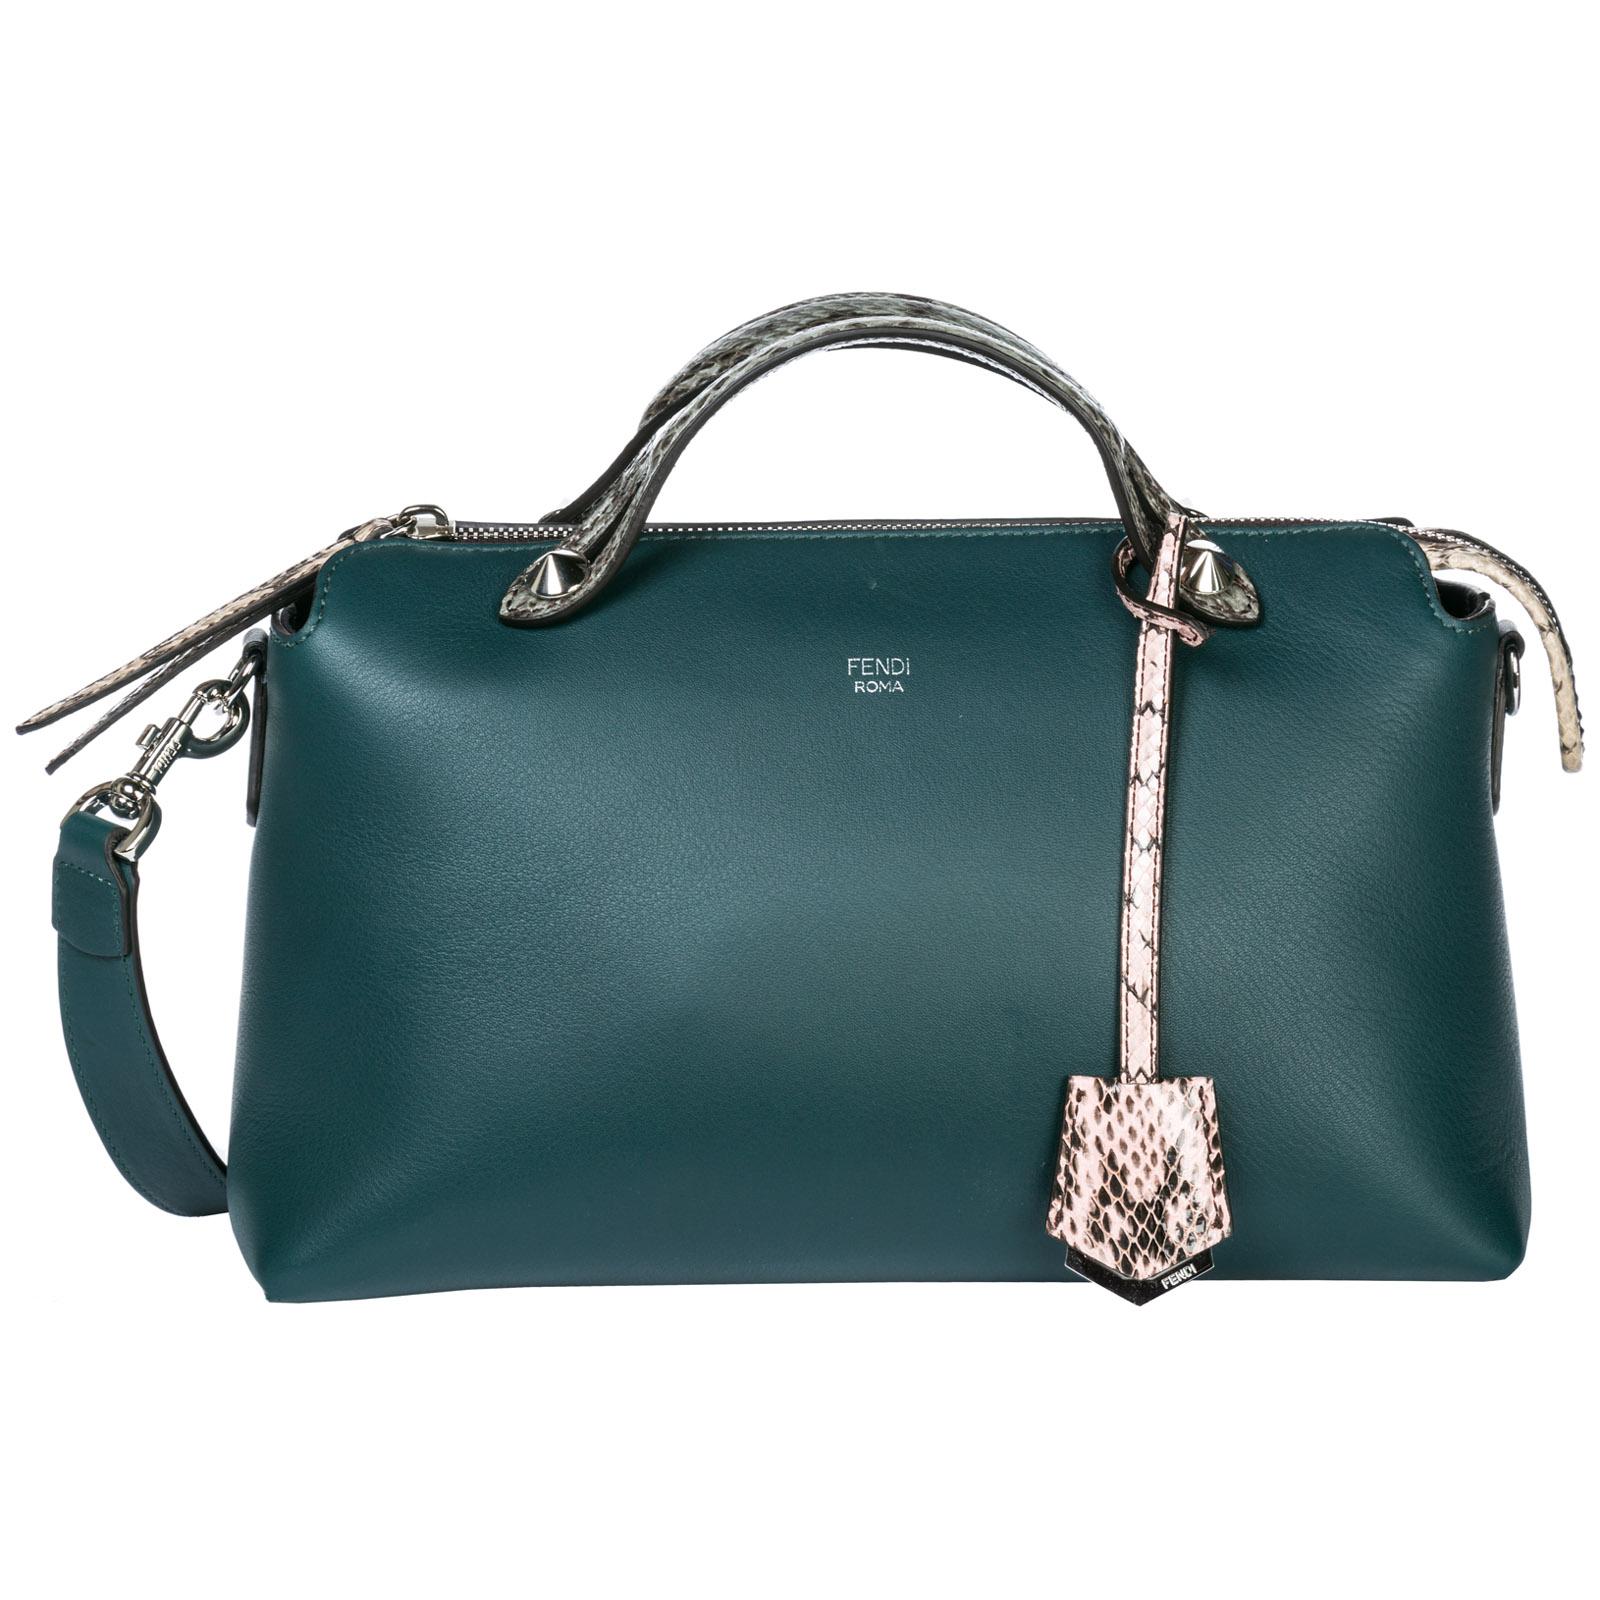 Fendi Handtasche Leder Damen Tasche Damenhandtasche Fass Bag By The Way In Green Modesens